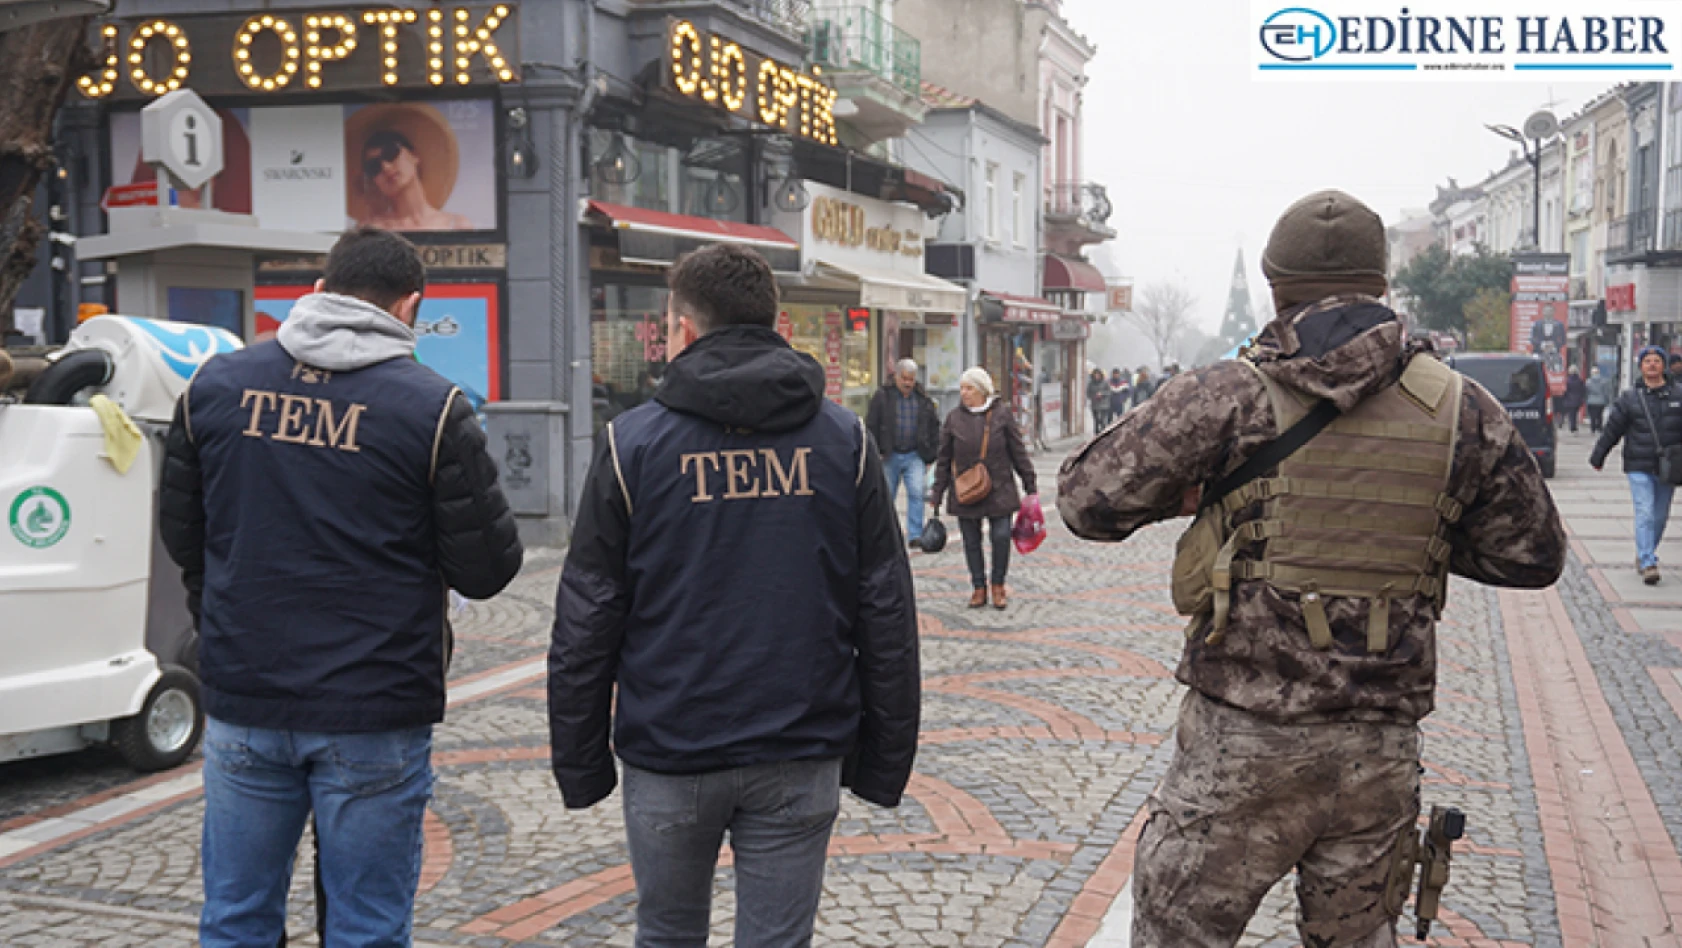 Edirne'de çok sayıda polisin katılımıyla uygulama yapıldı